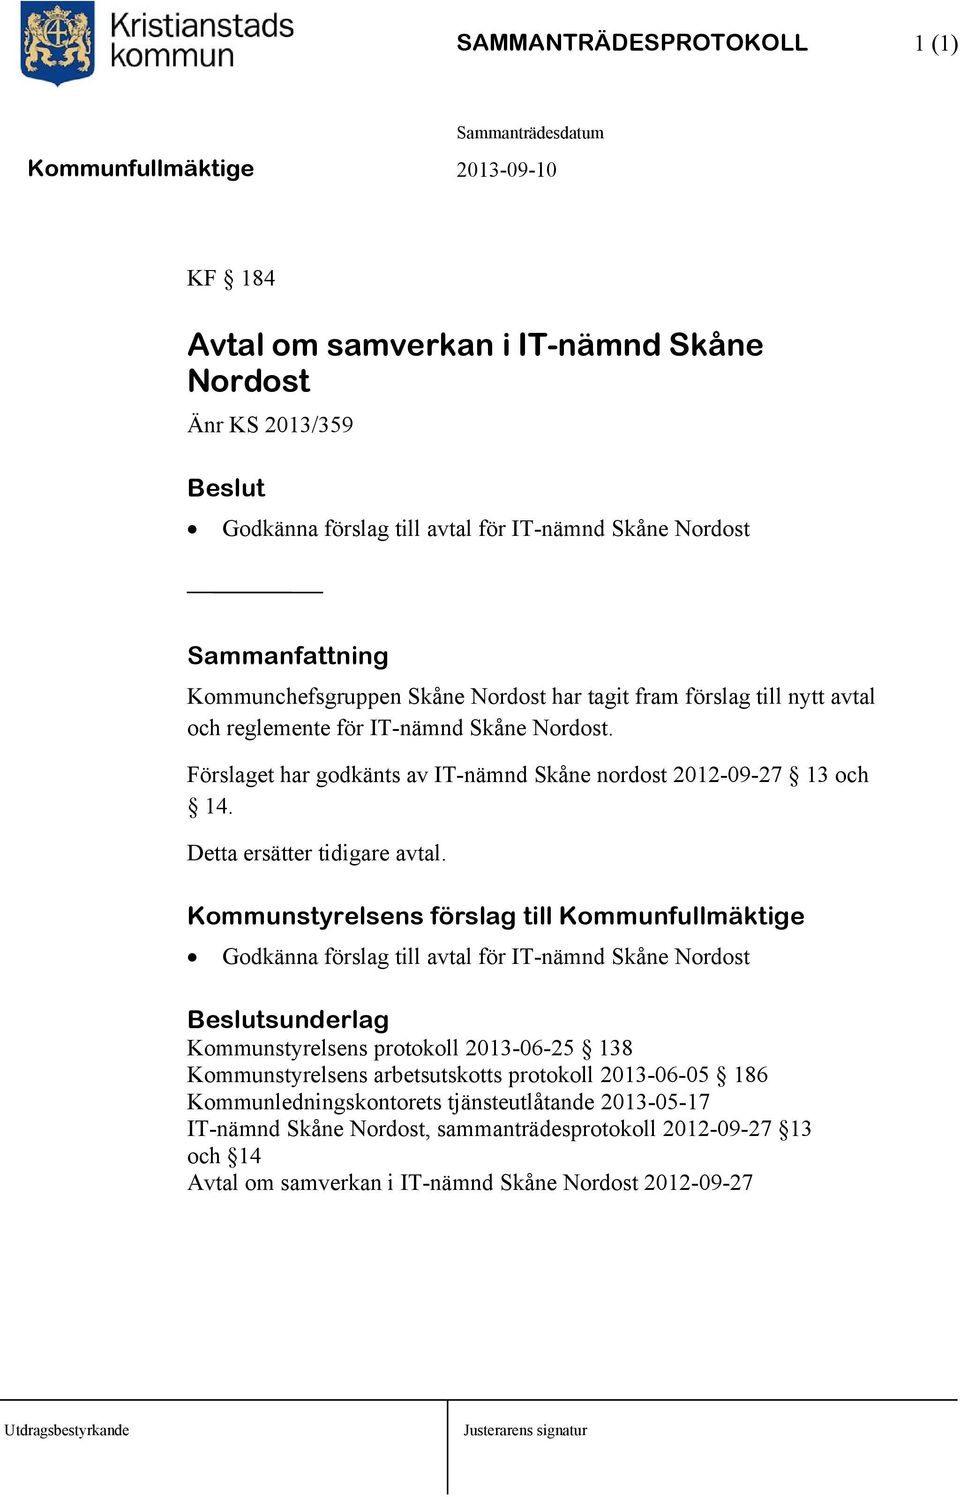 Kommunstyrelsens förslag till Kommunfullmäktige Godkänna förslag till avtal för IT-nämnd Skåne Nordost Kommunstyrelsens protokoll 2013-06-25 138 Kommunstyrelsens arbetsutskotts